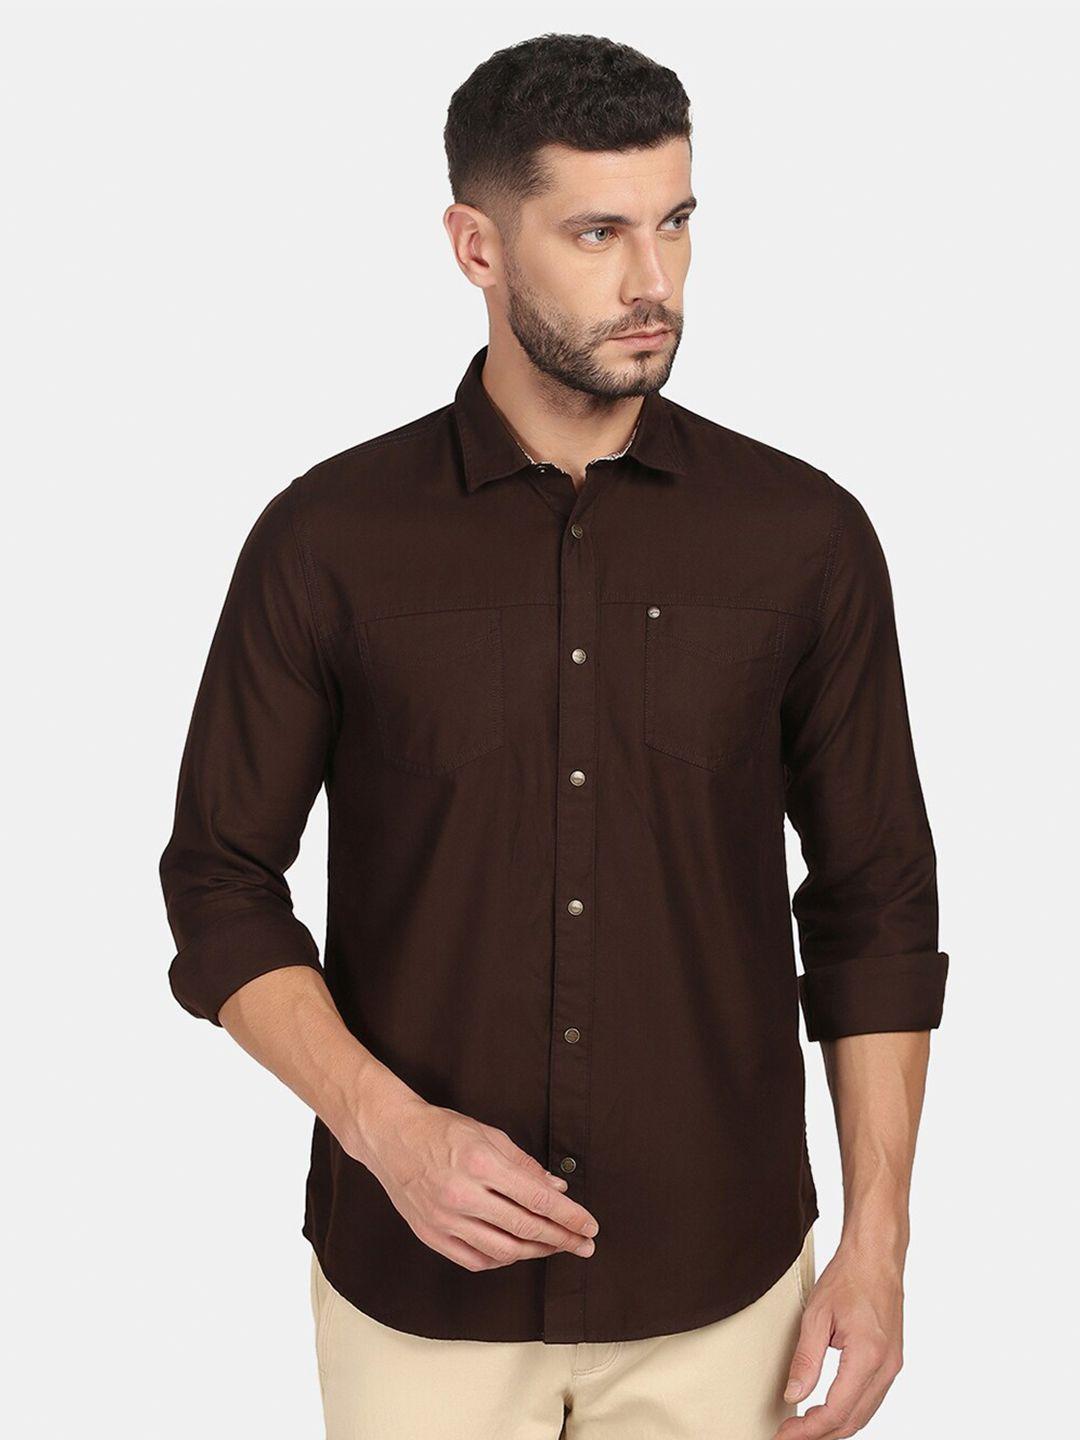 blackberrys-men-brown-slim-fit-pure-cotton-casual-shirt